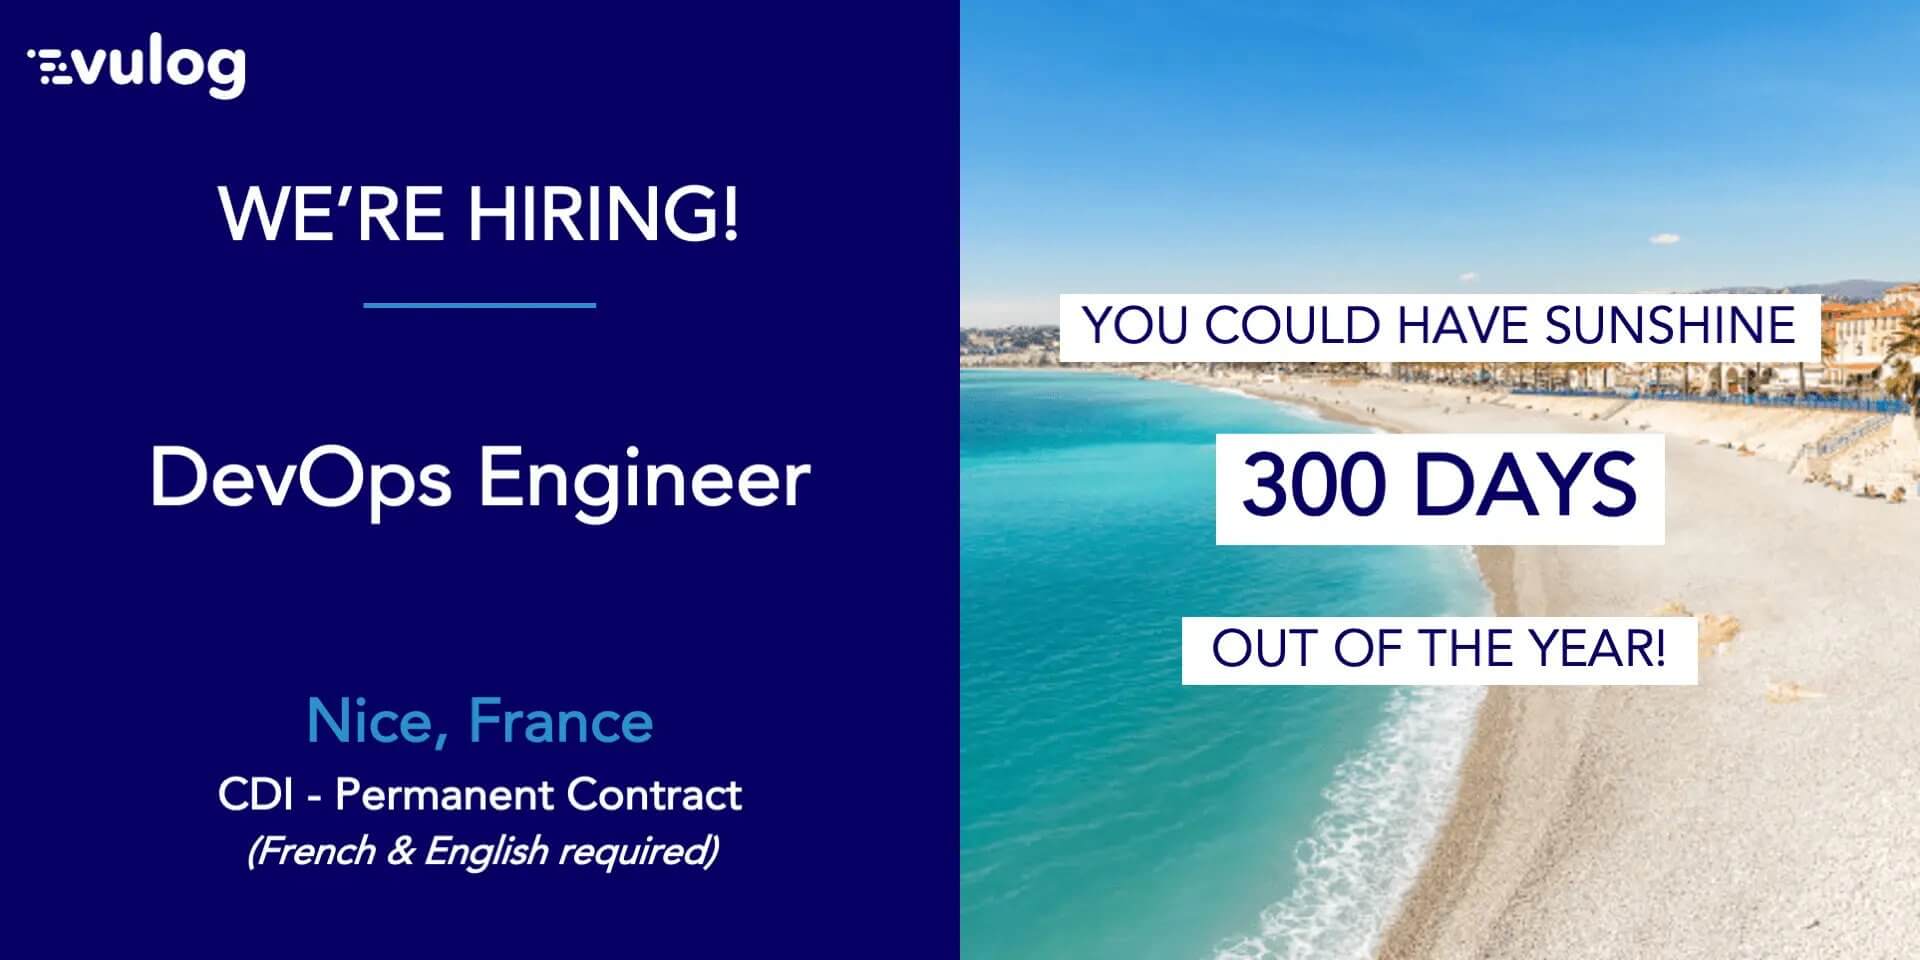 Vulog hiring DevOps Engineer in Nice